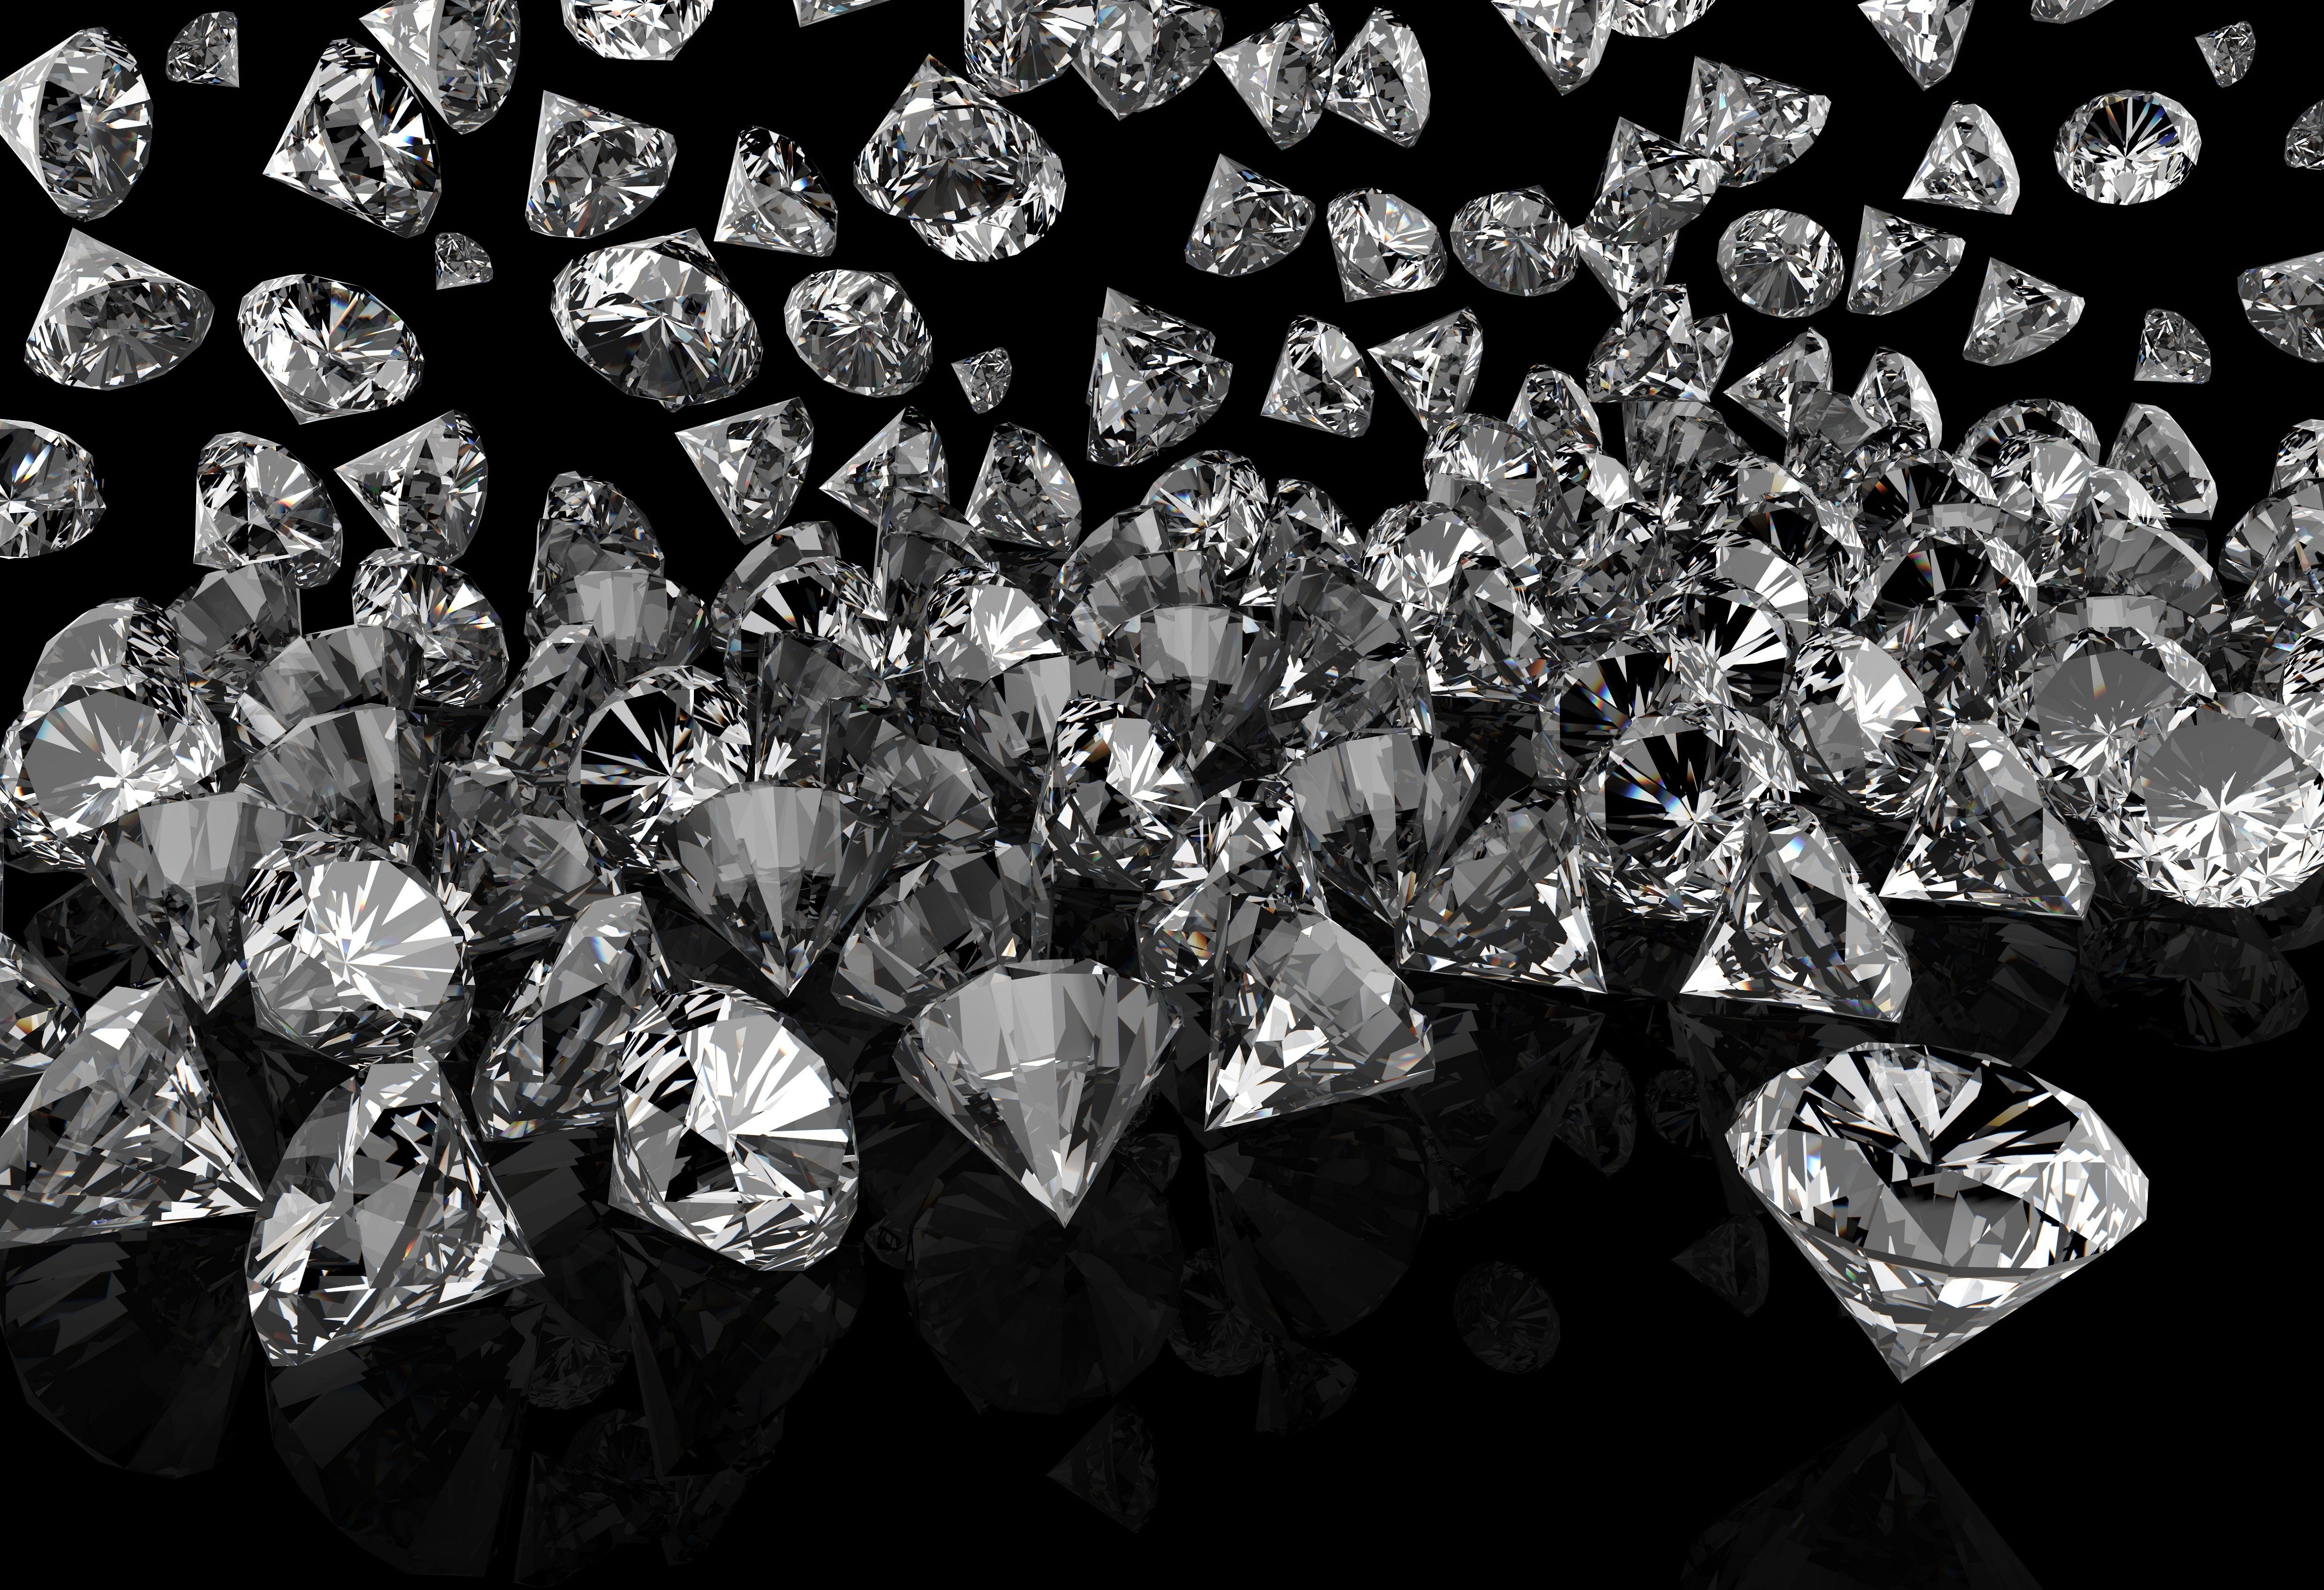  Diamant Hintergrundbild 4950x3387. Download Hintergrundbild hintergrund, glanz, schwarzer hintergrund, diamanten, kieselsteine die Auflösung 4950x3387